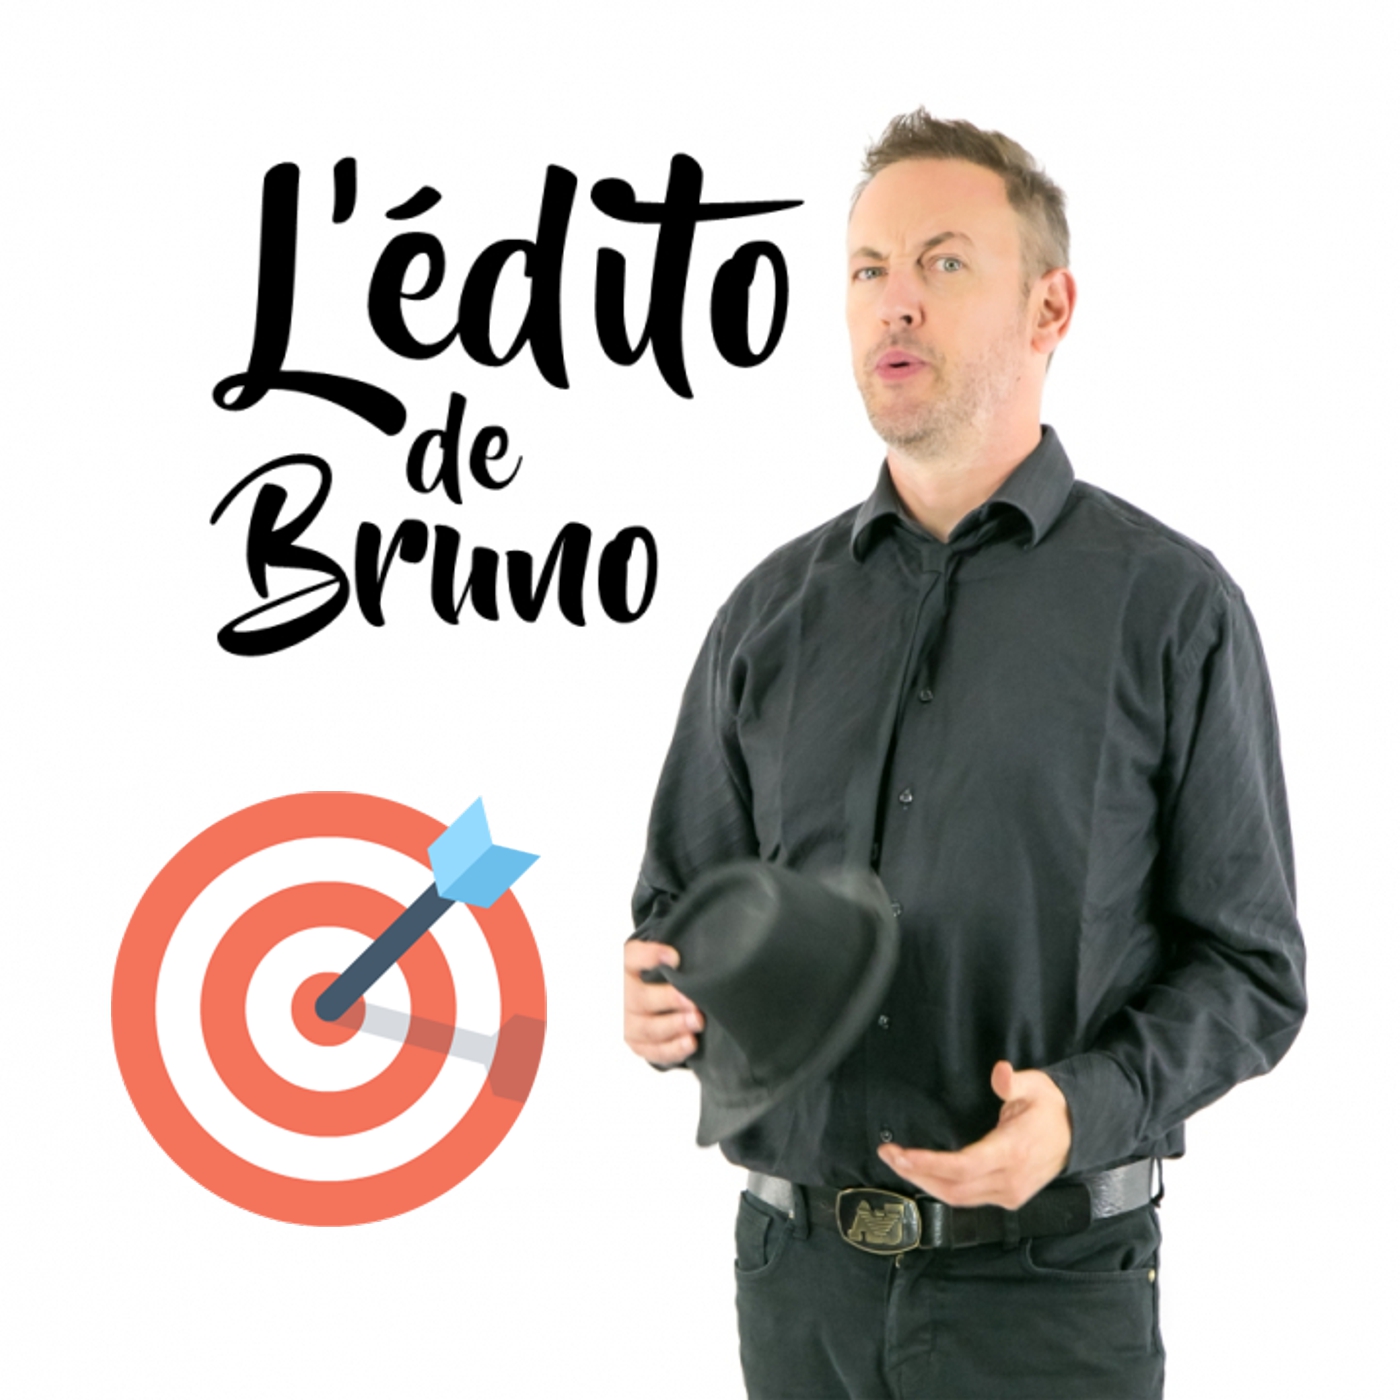 L'édito de Bruno du 01 06 2021 L'édito de Bruno de l'émission Tendance à m'plaire sur Radio G! L'édito de Bruno du 01 06 2021